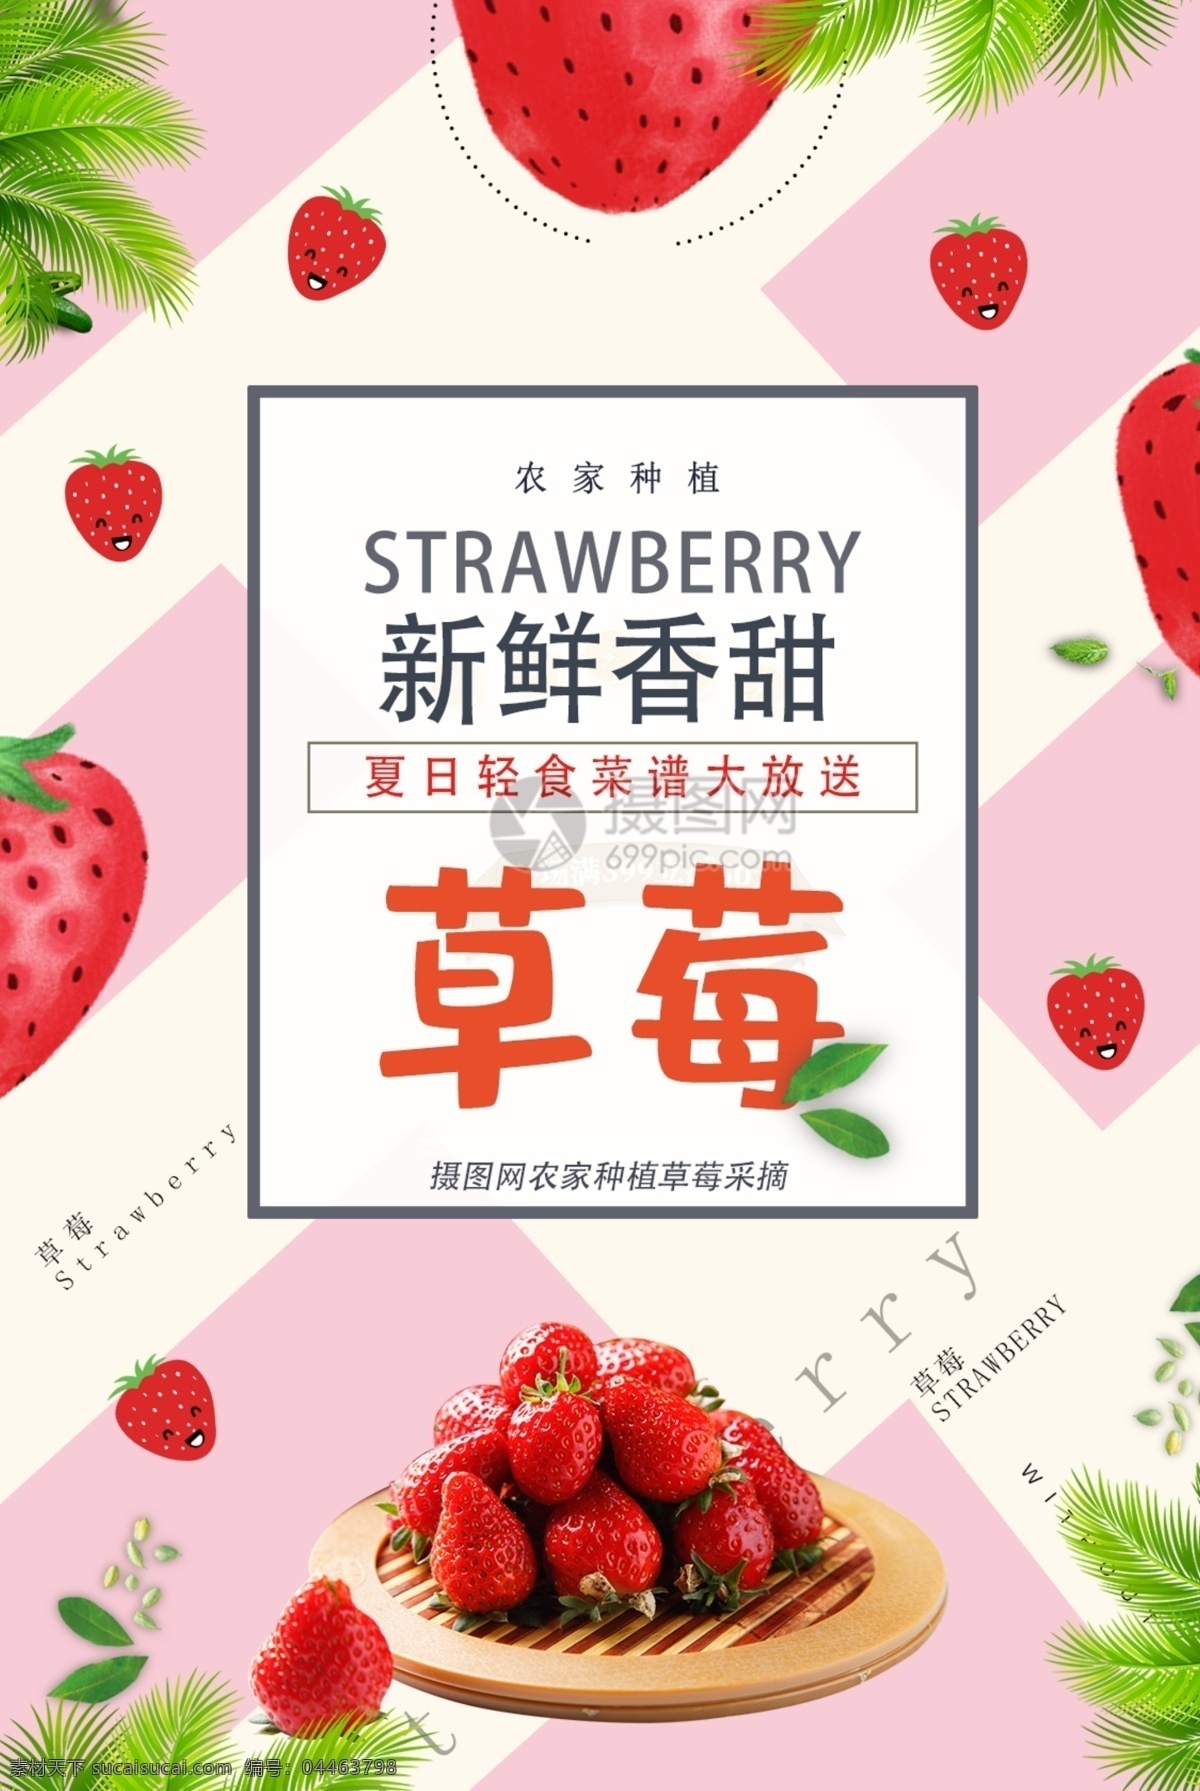 小 清新 草莓 促销 宣传海报 模板 草莓海报 水果皇后 水果店海报 水果海报 草莓宣传 草莓汁 摘草莓 水果促销 新鲜草莓